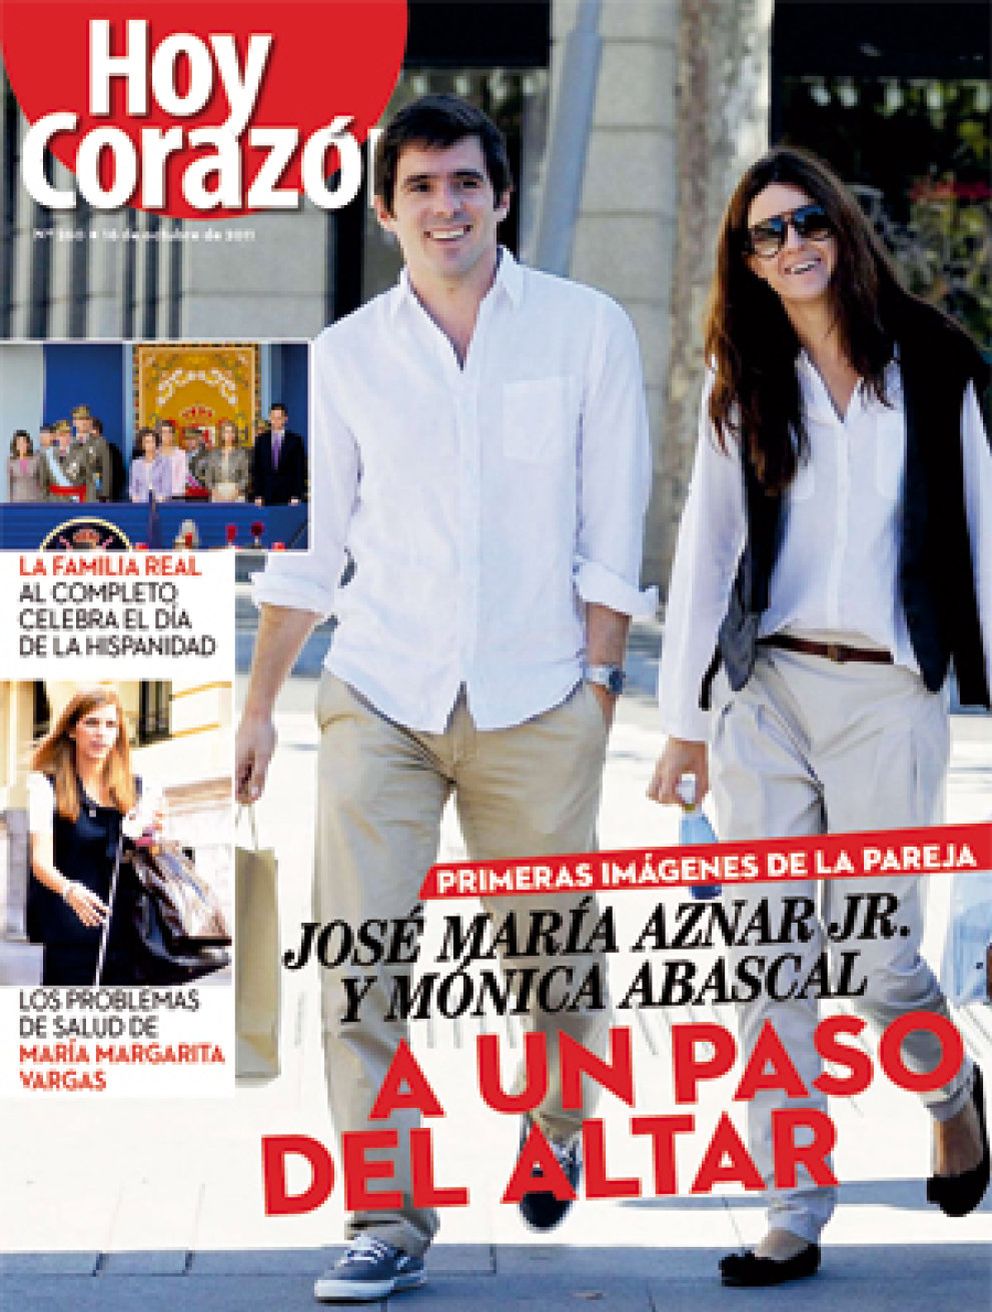 Foto: José María Aznar Jr. y su prometida ultiman los detalles de su boda